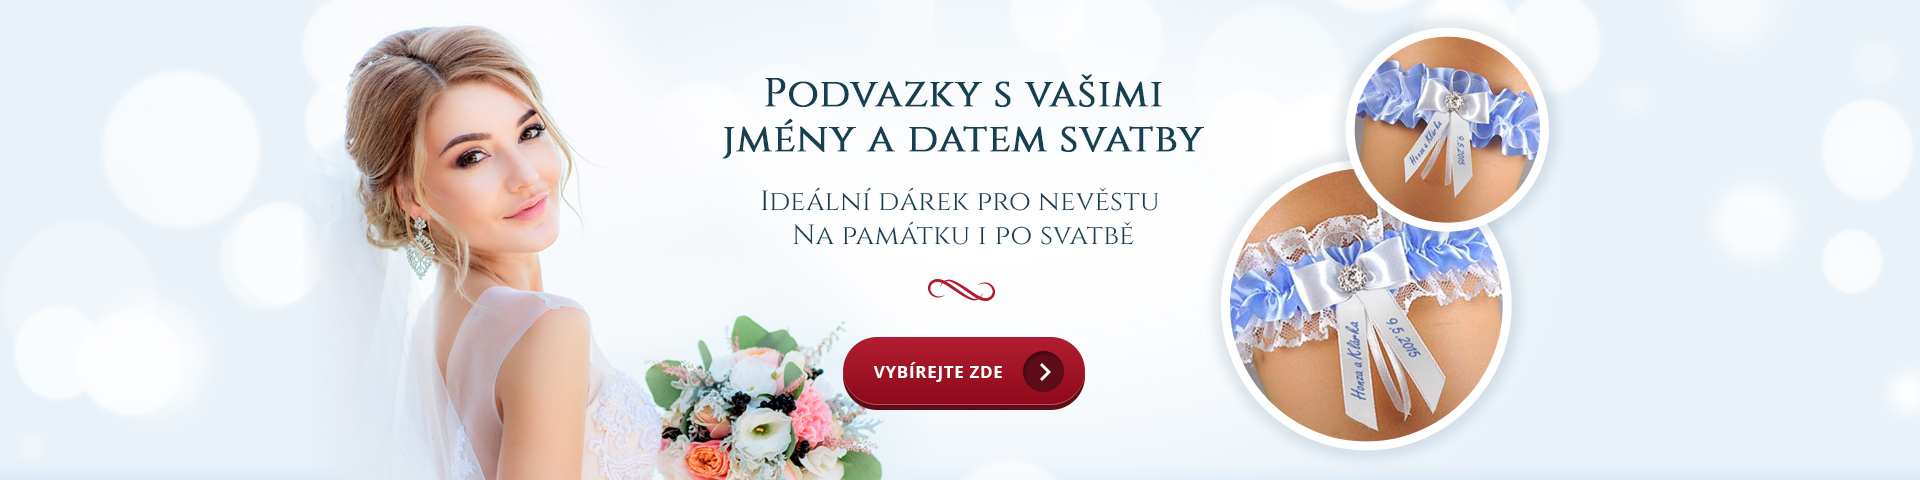 Svatební podvazky s potiskem - Svatební potřeby.cz